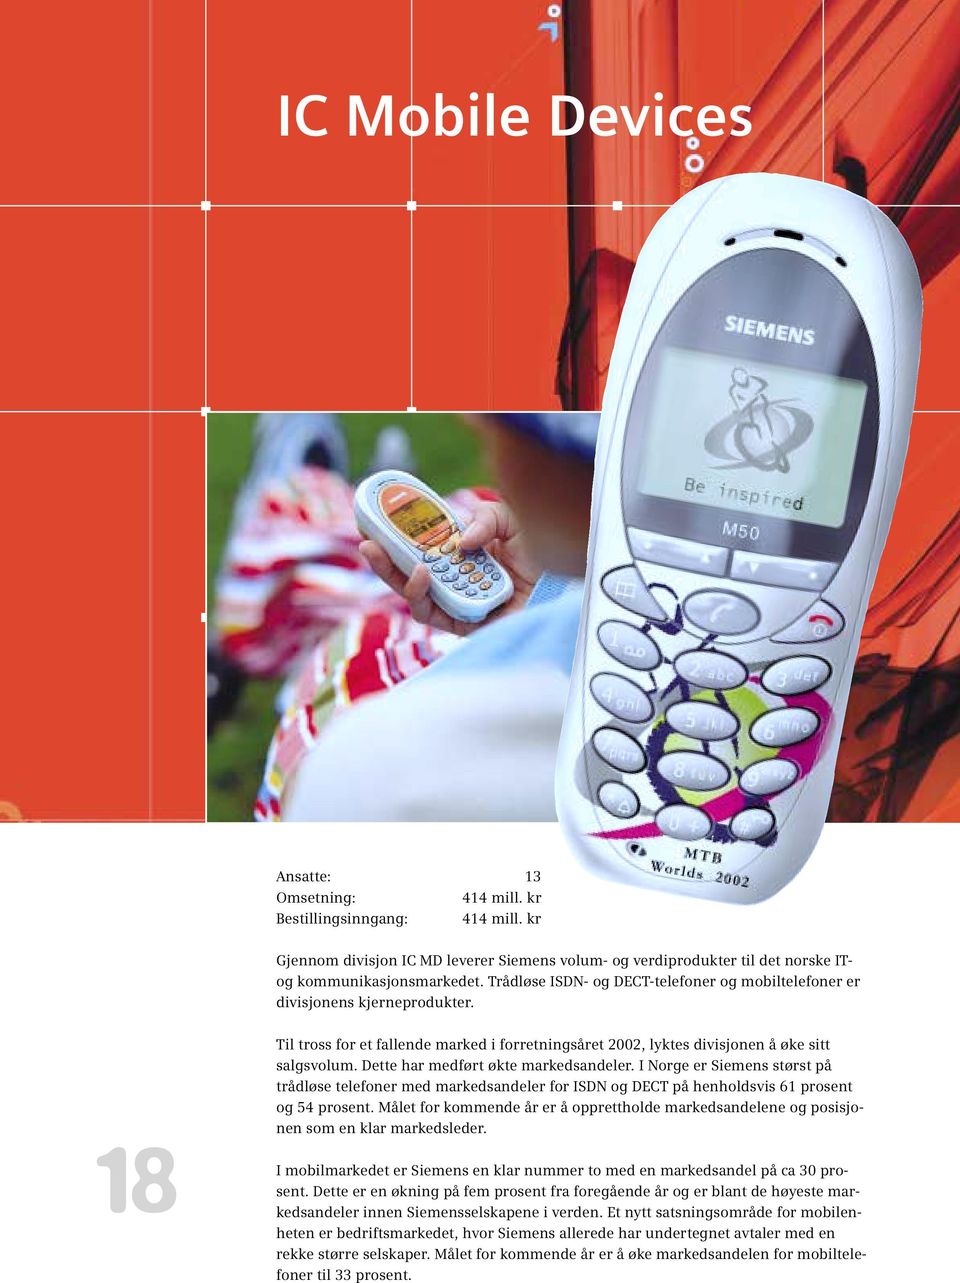 Dette har medført økte markedsandeler. I Norge er Siemens størst på trådløse telefoner med markedsandeler for ISDN og DECT på henholdsvis 61 prosent og 54 prosent.